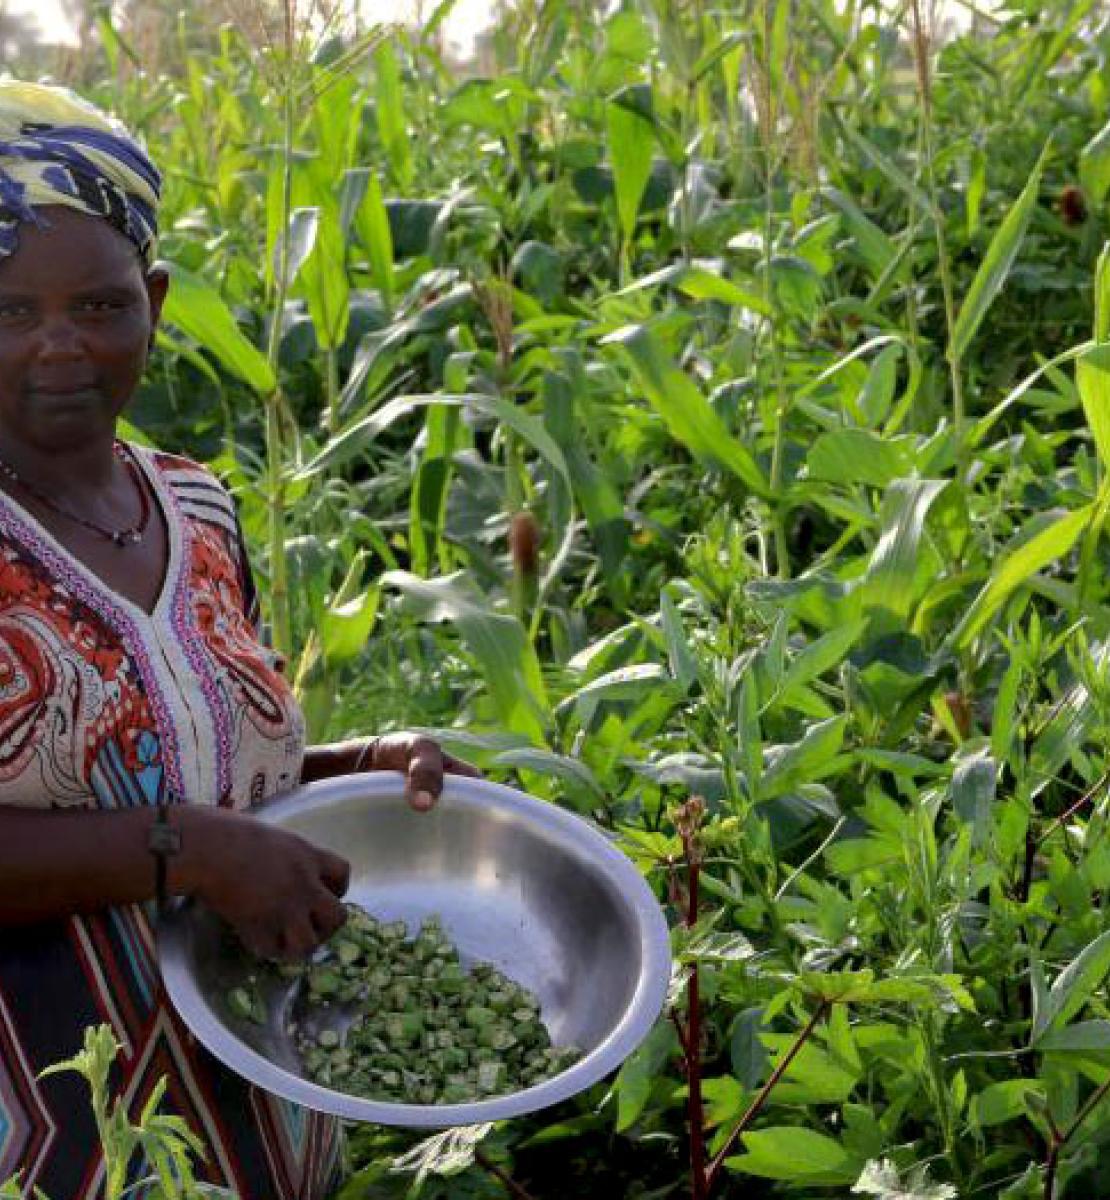 Une femme se tient au milieu d'un champ de cultures verdoyant. Elle tient un bol de haricots dans les mains en regardant la caméra.